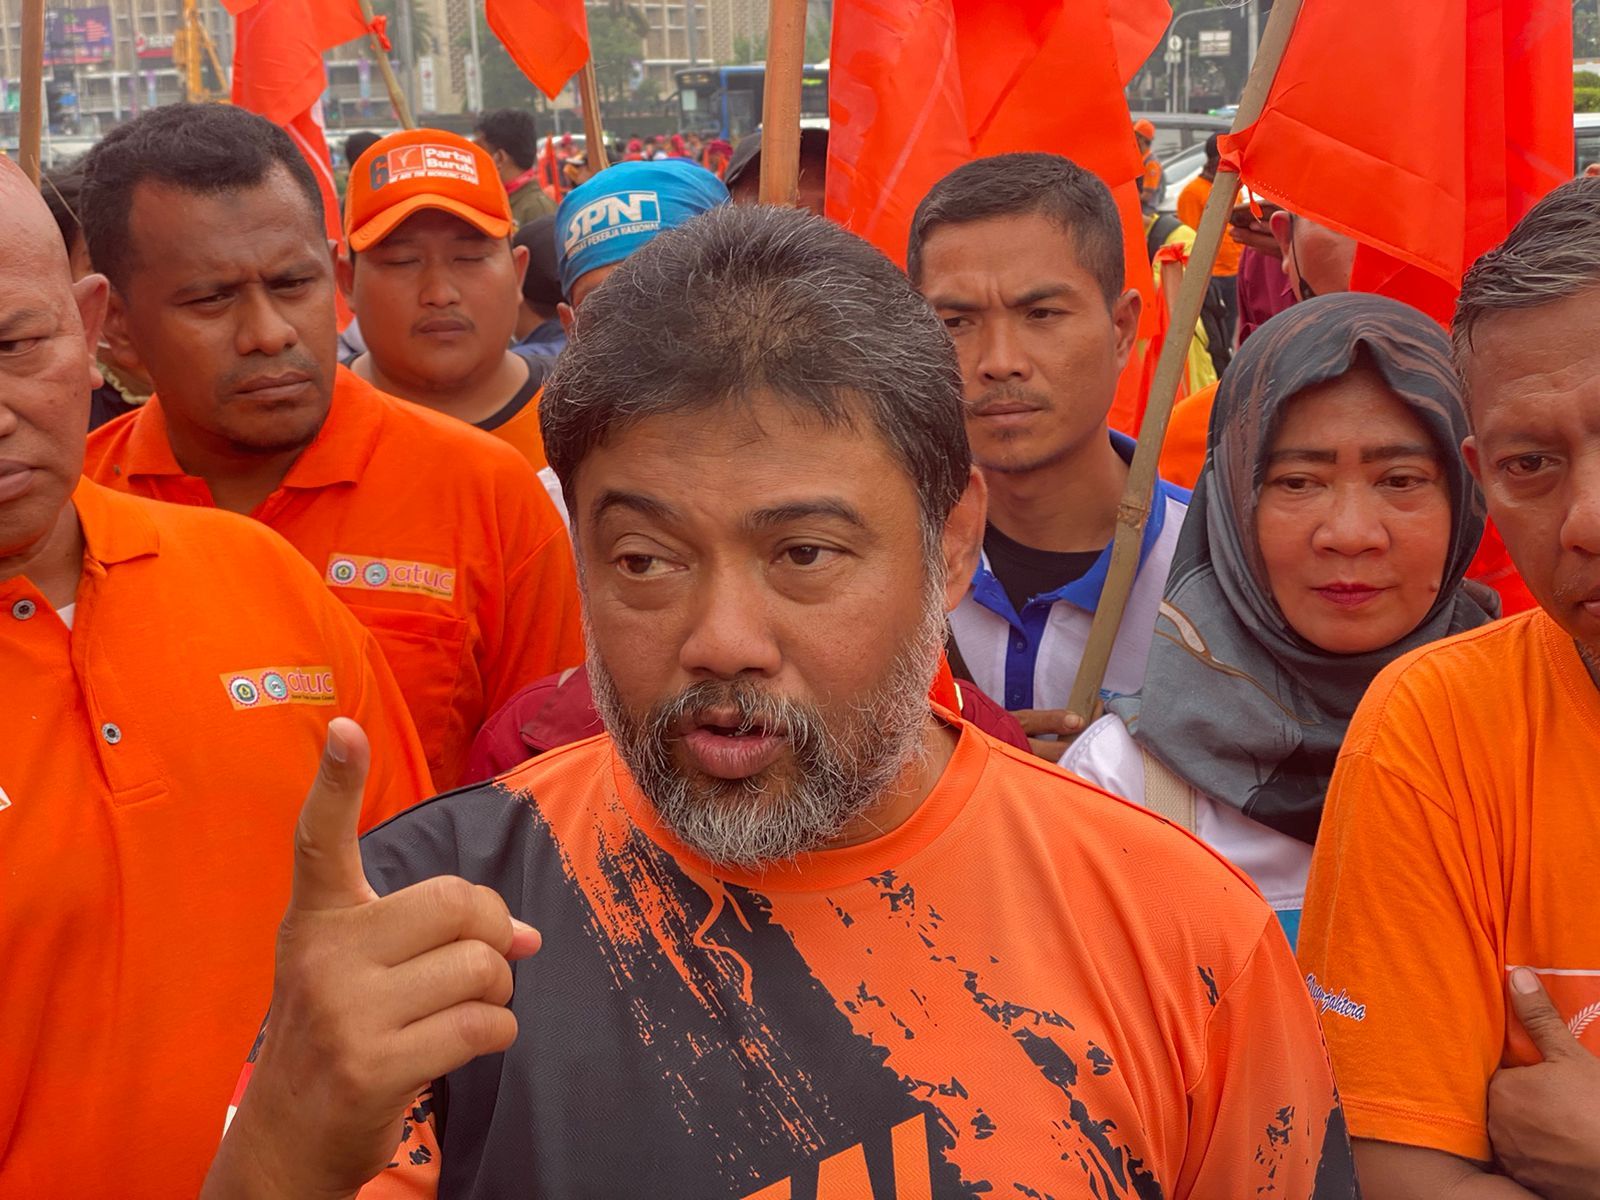 Kamis, Serikat Buruh Akan Gelar Demo Tolak Tapera di Depan Istana